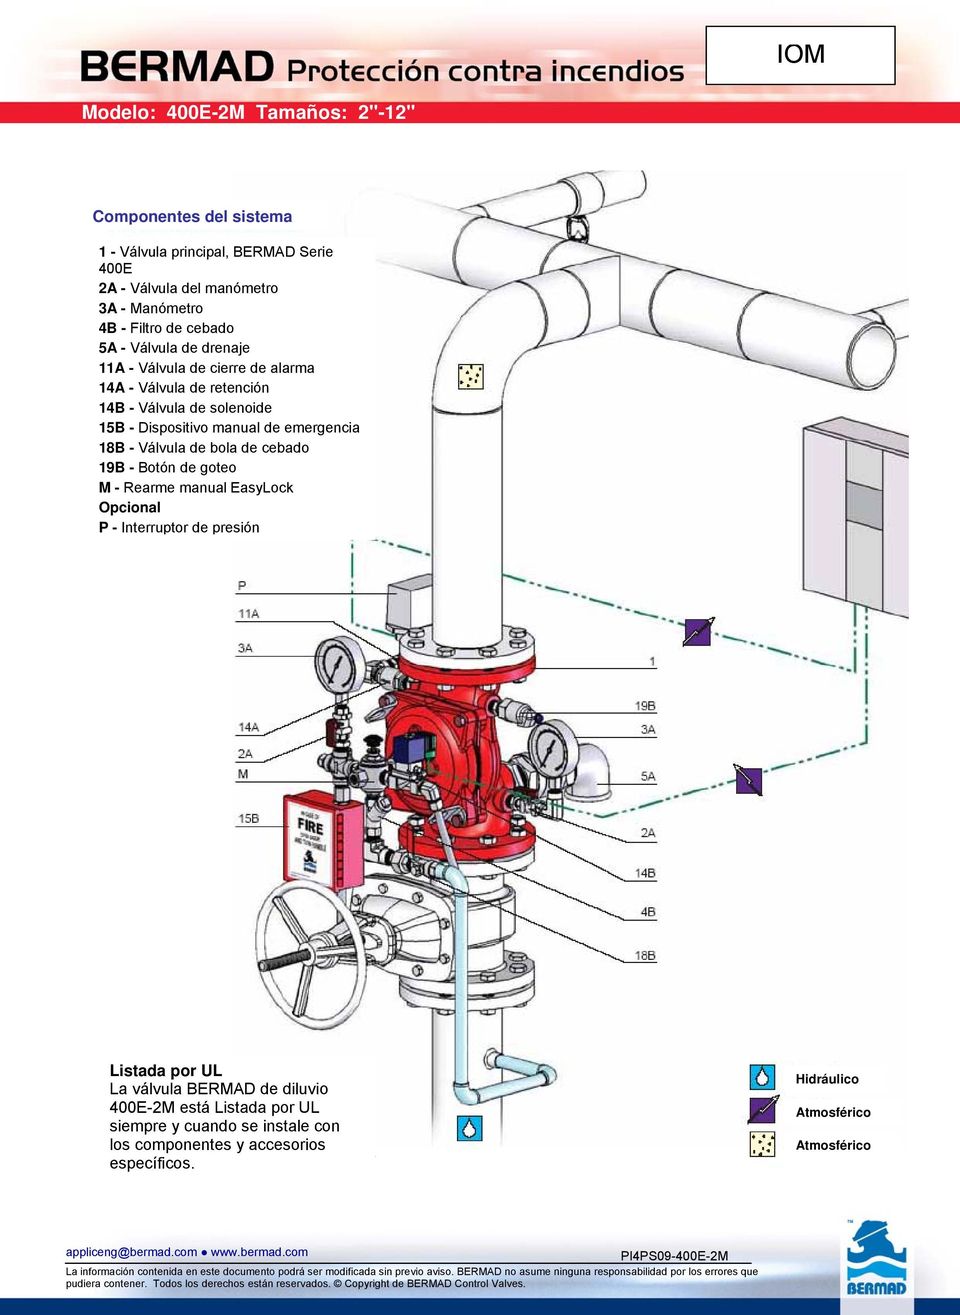 Válvula de bola de cebado 19B - Botón de goteo M - Rearme manual EasyLock Opcional P - Interruptor de presión Listada por UL La válvula BERMAD